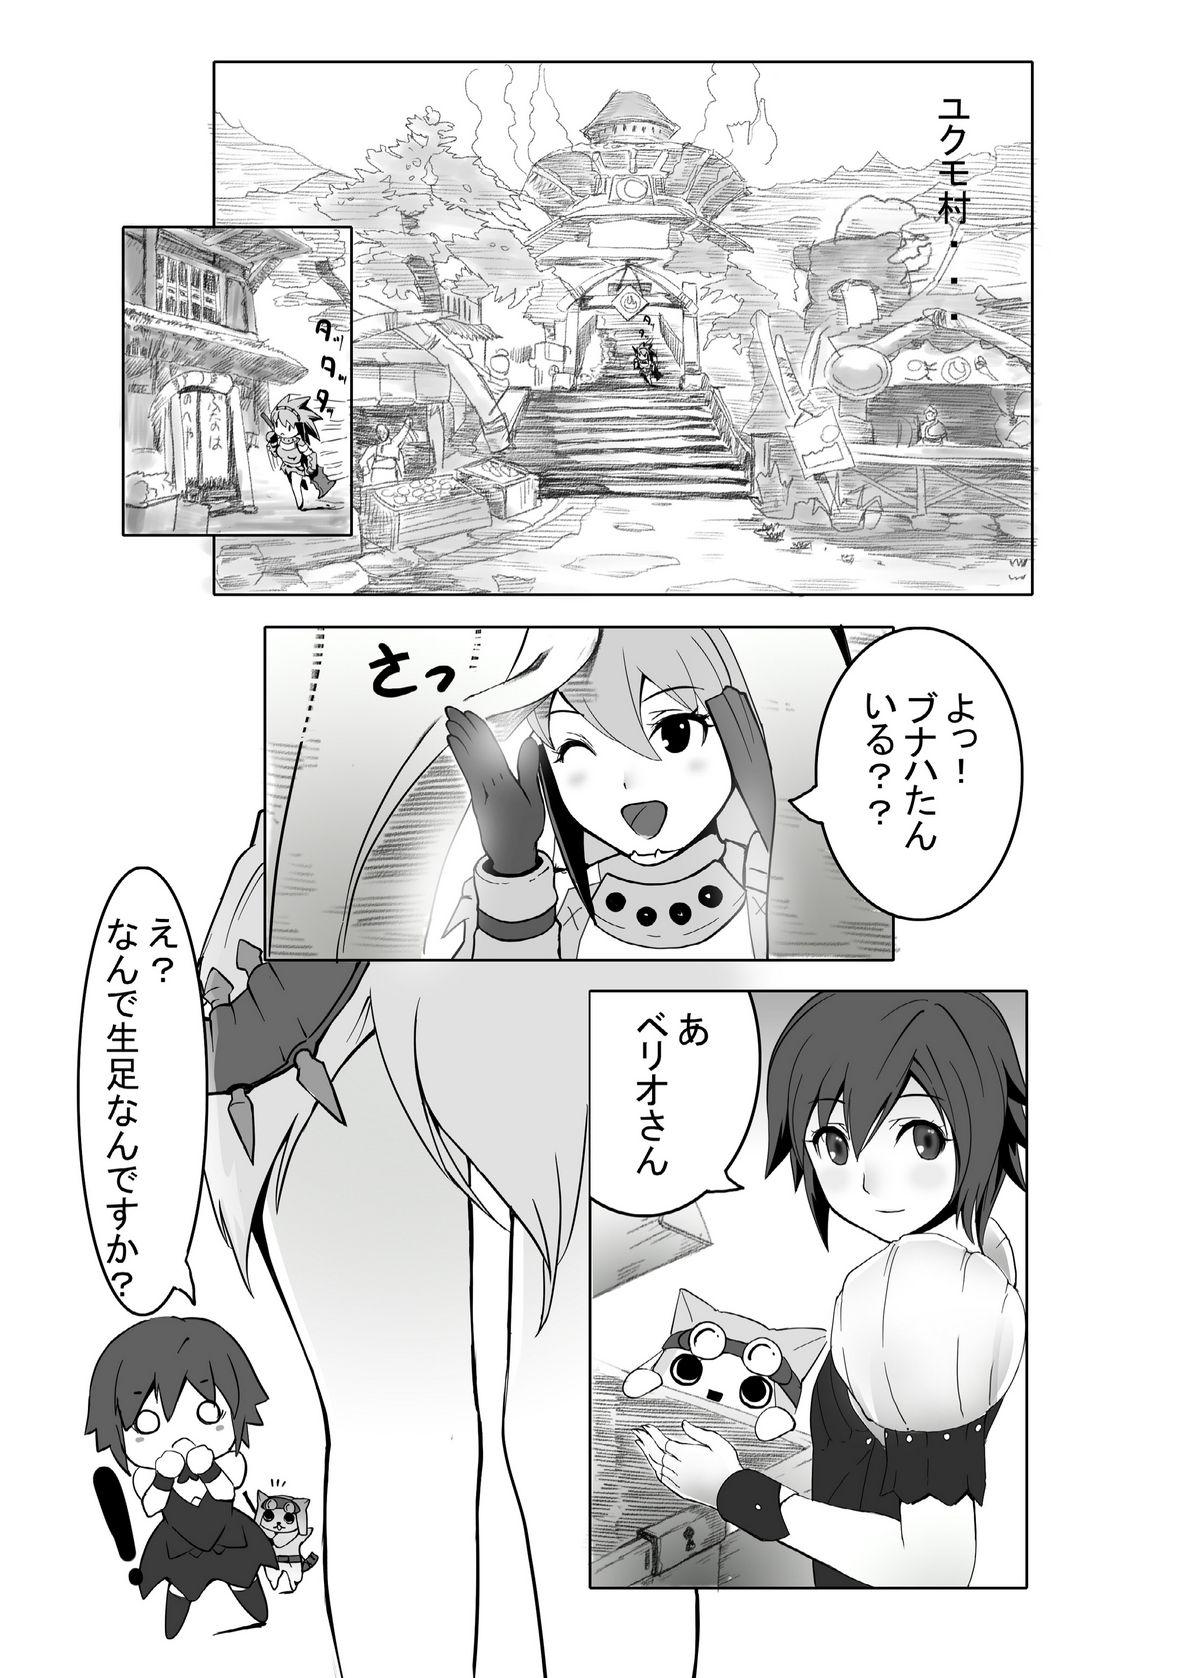 Short hokakuni narimashita 3 - Monster hunter Rica - Page 6